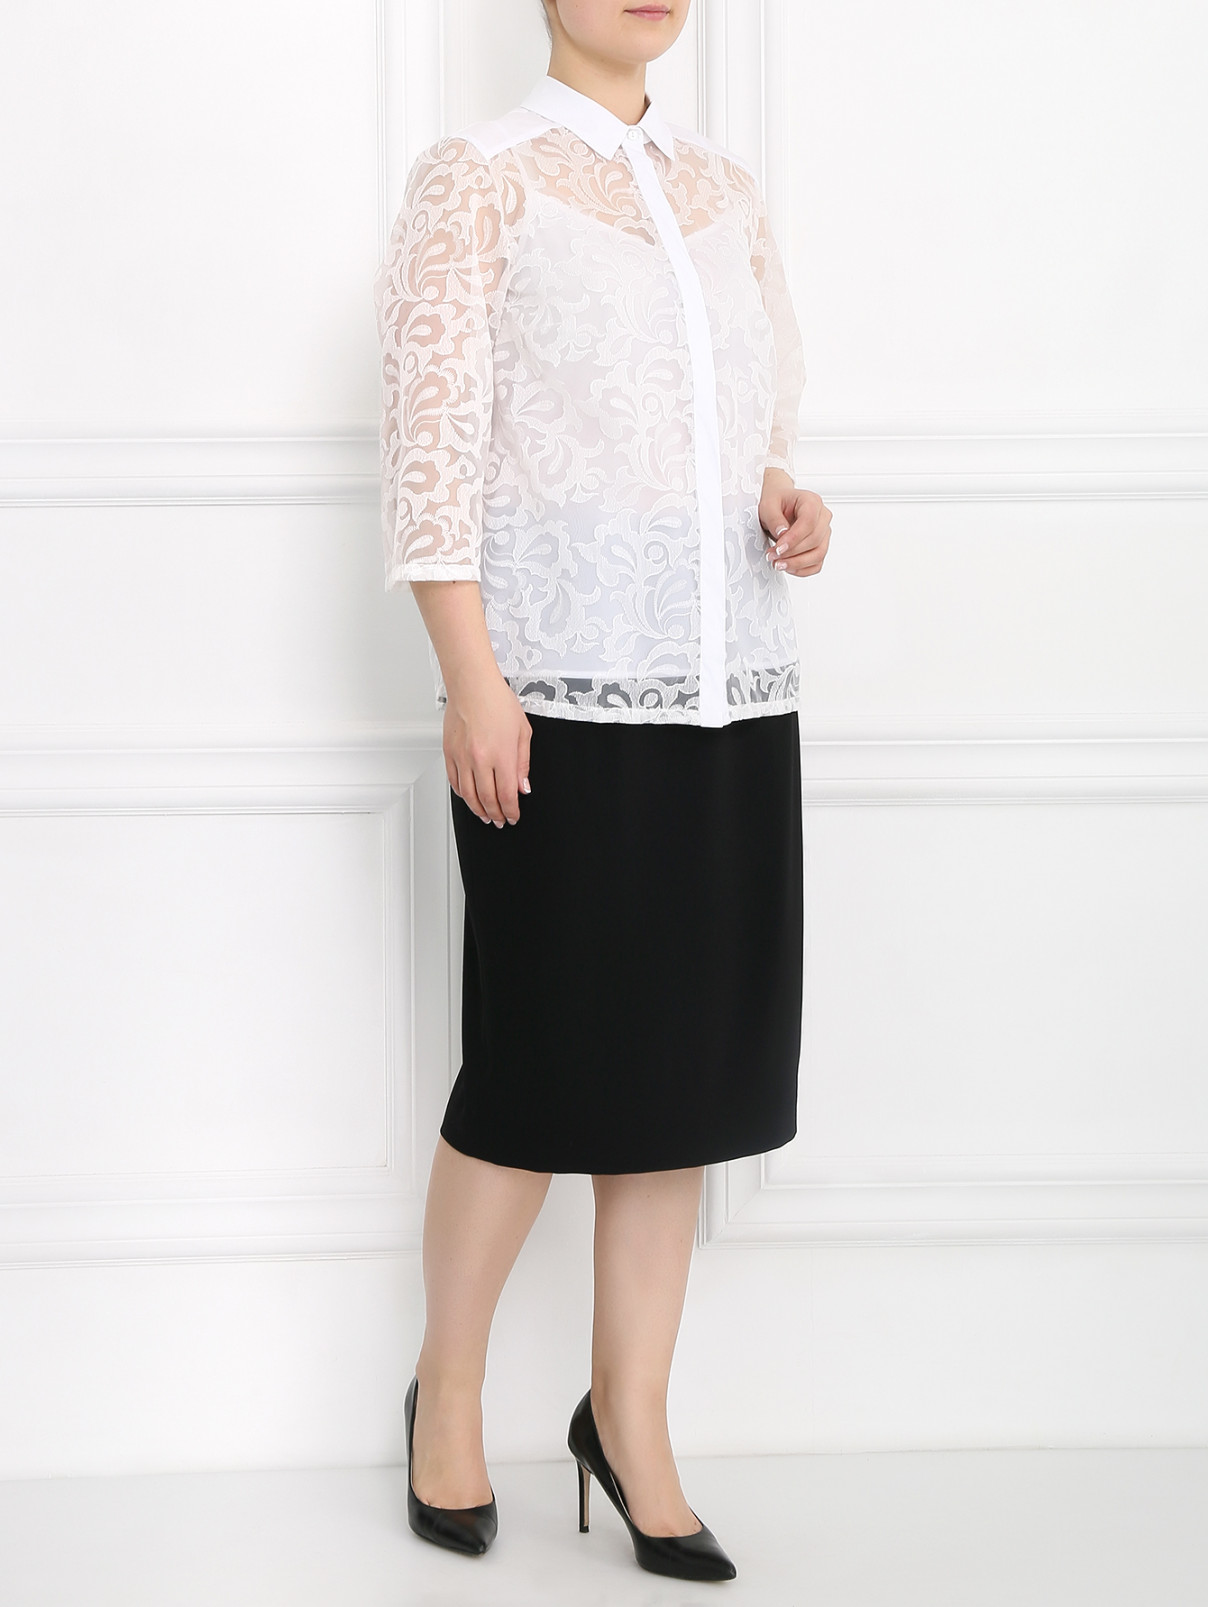 Блуза с узором и рукавами 3/4 Persona by Marina Rinaldi  –  Модель Общий вид  – Цвет:  Белый